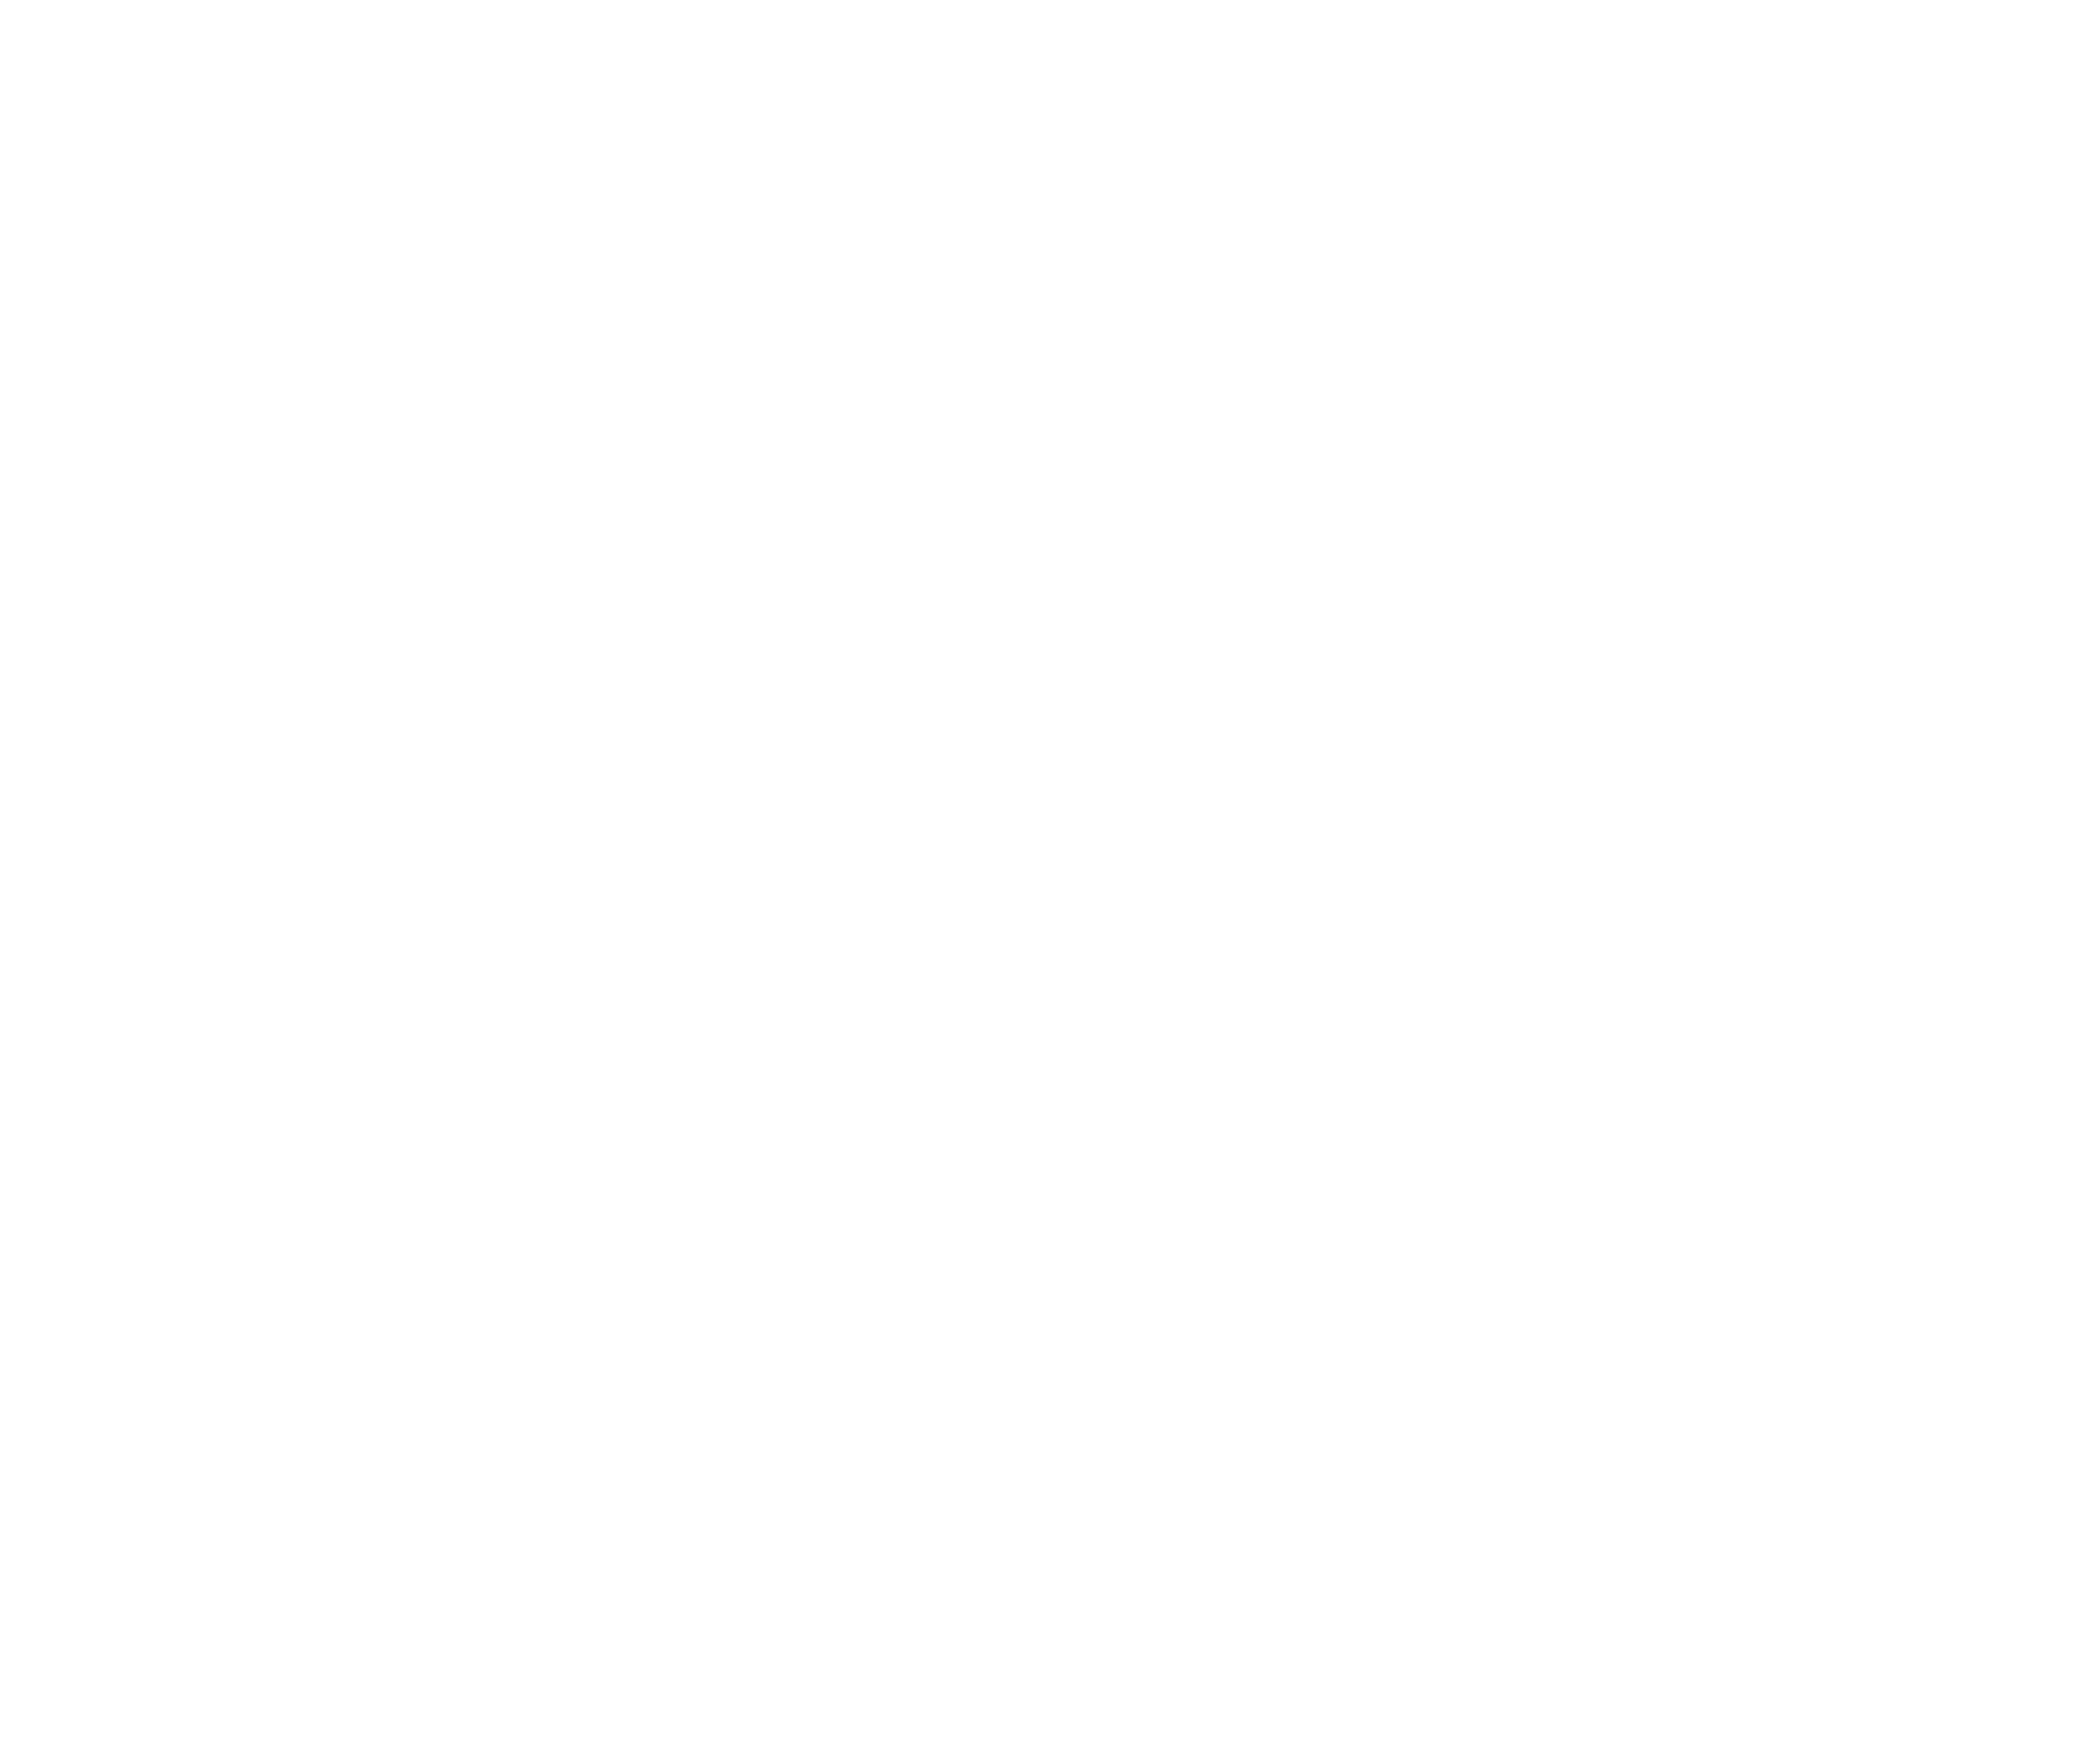 G20_Marca_Aplicacao_Positivo_Vertical.png